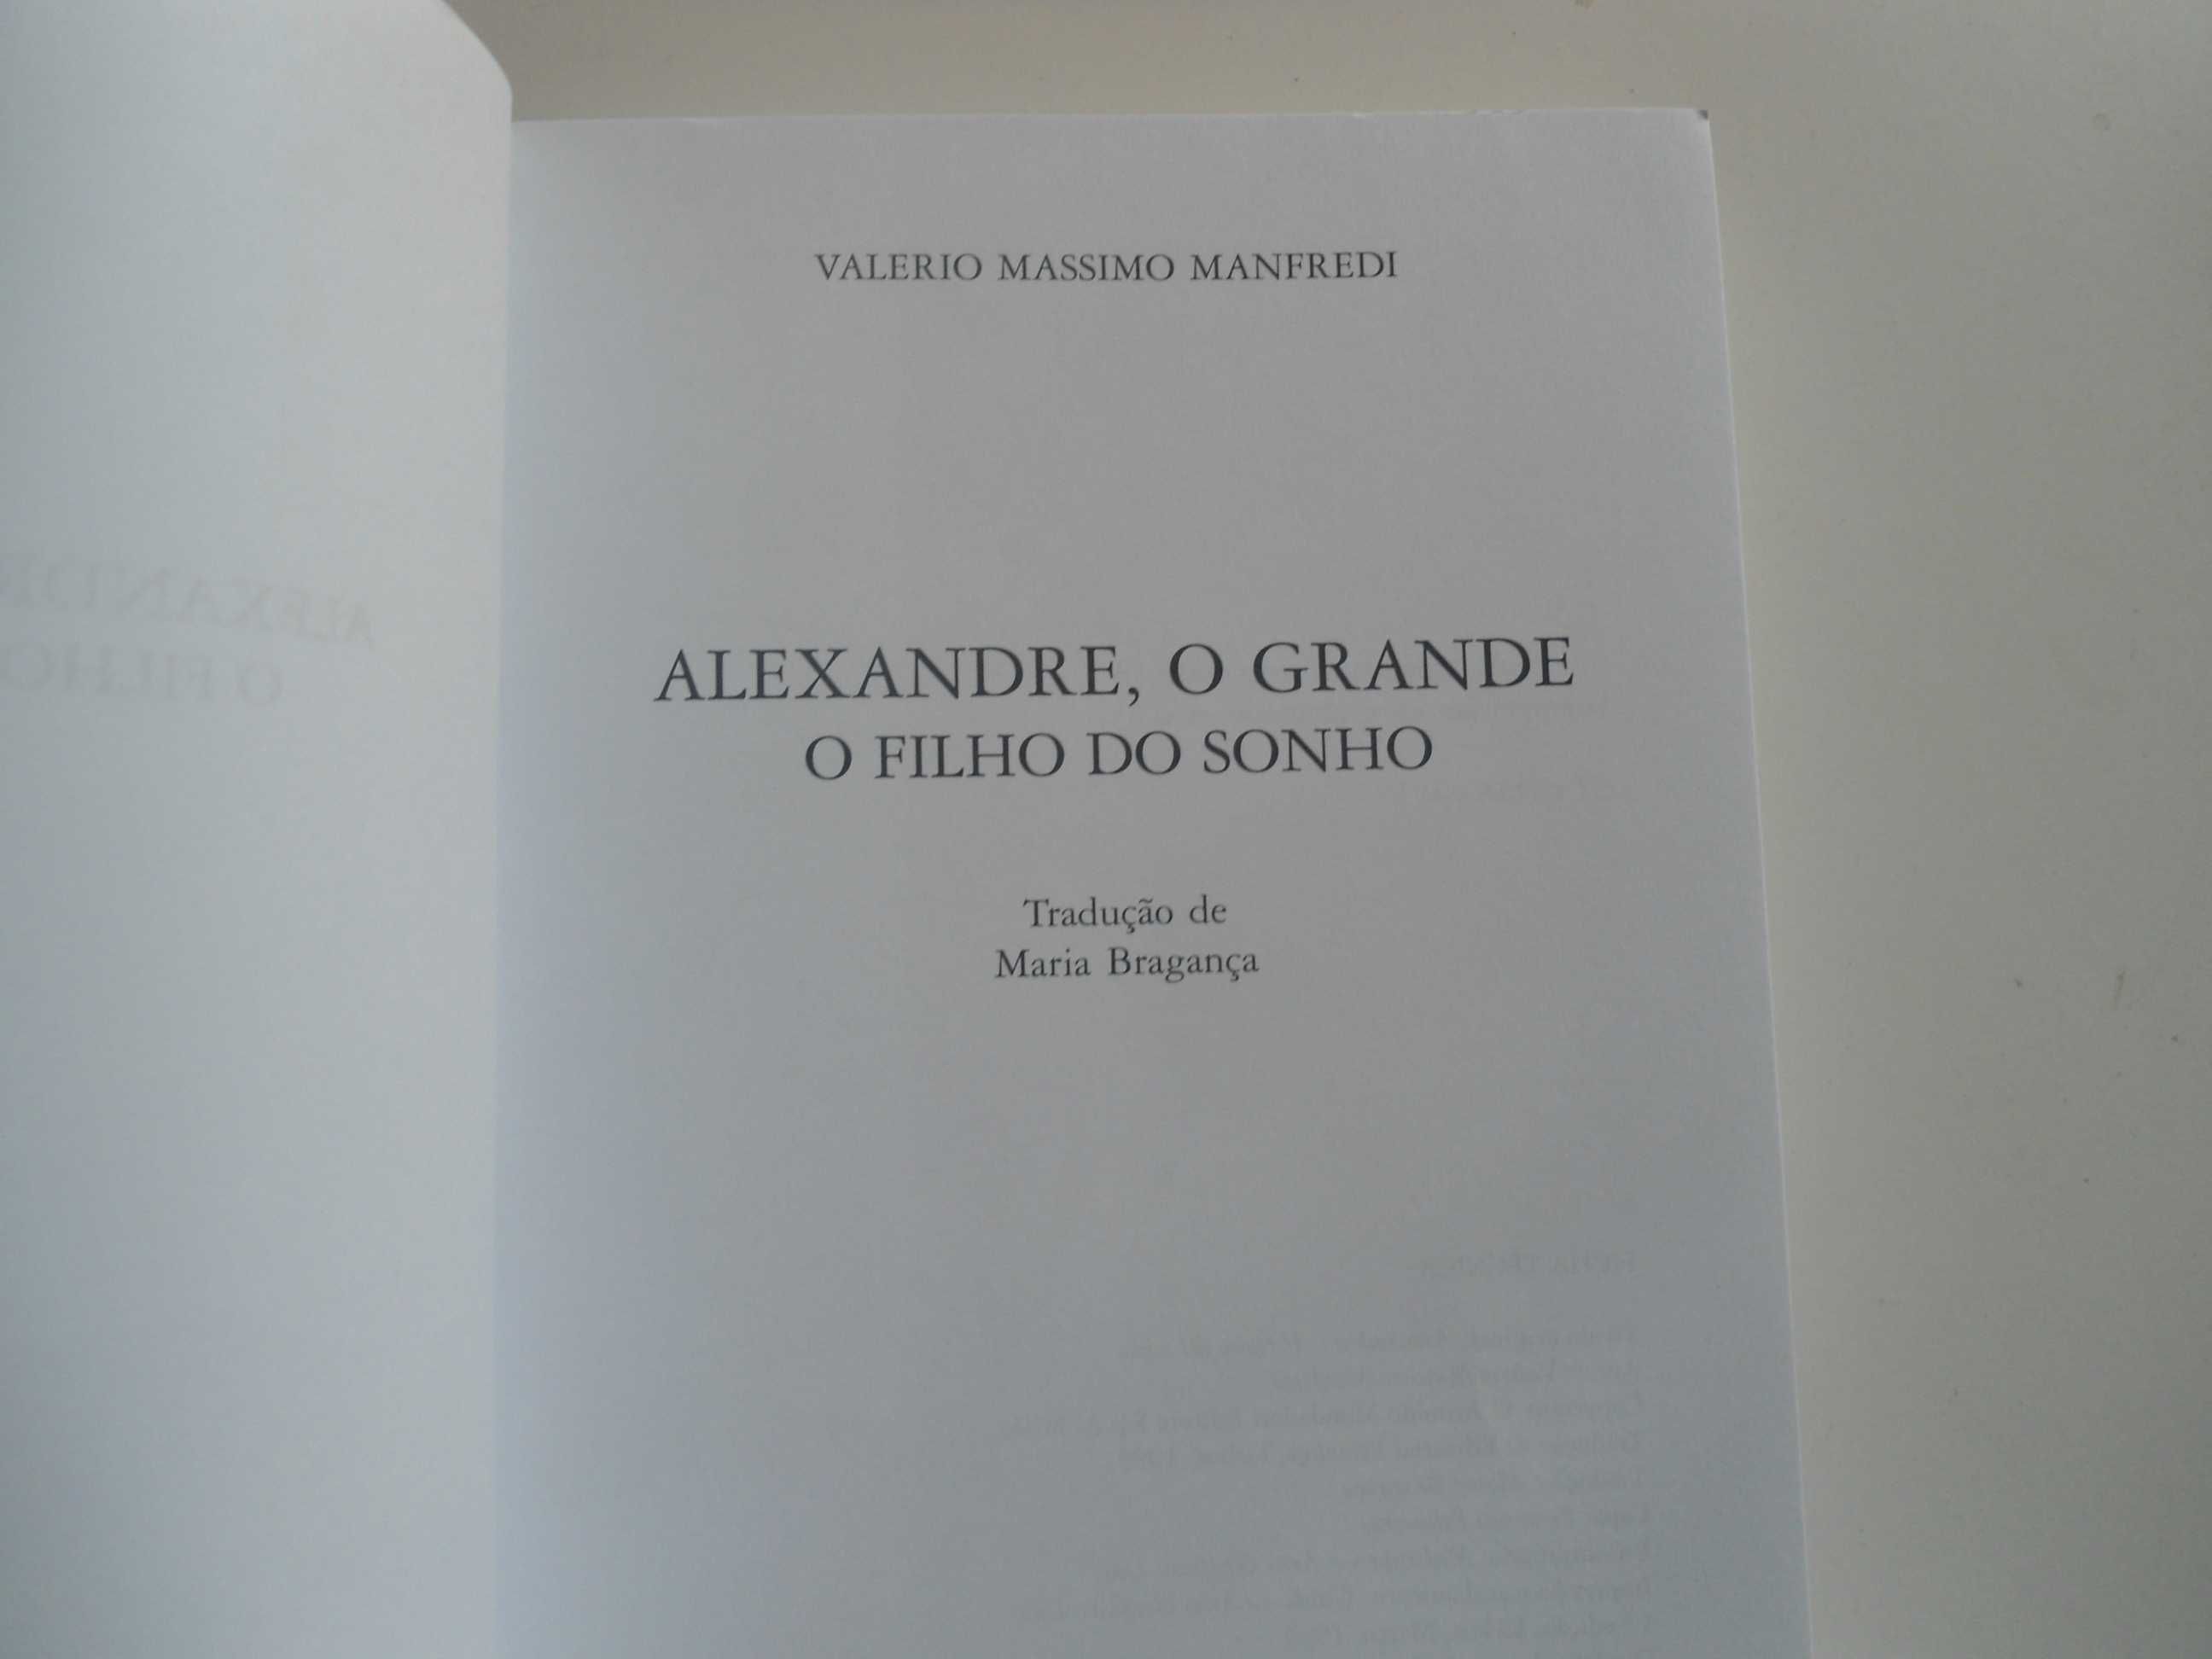 Alexandre, O Grande (I) por Valerio Massimo Manfredi